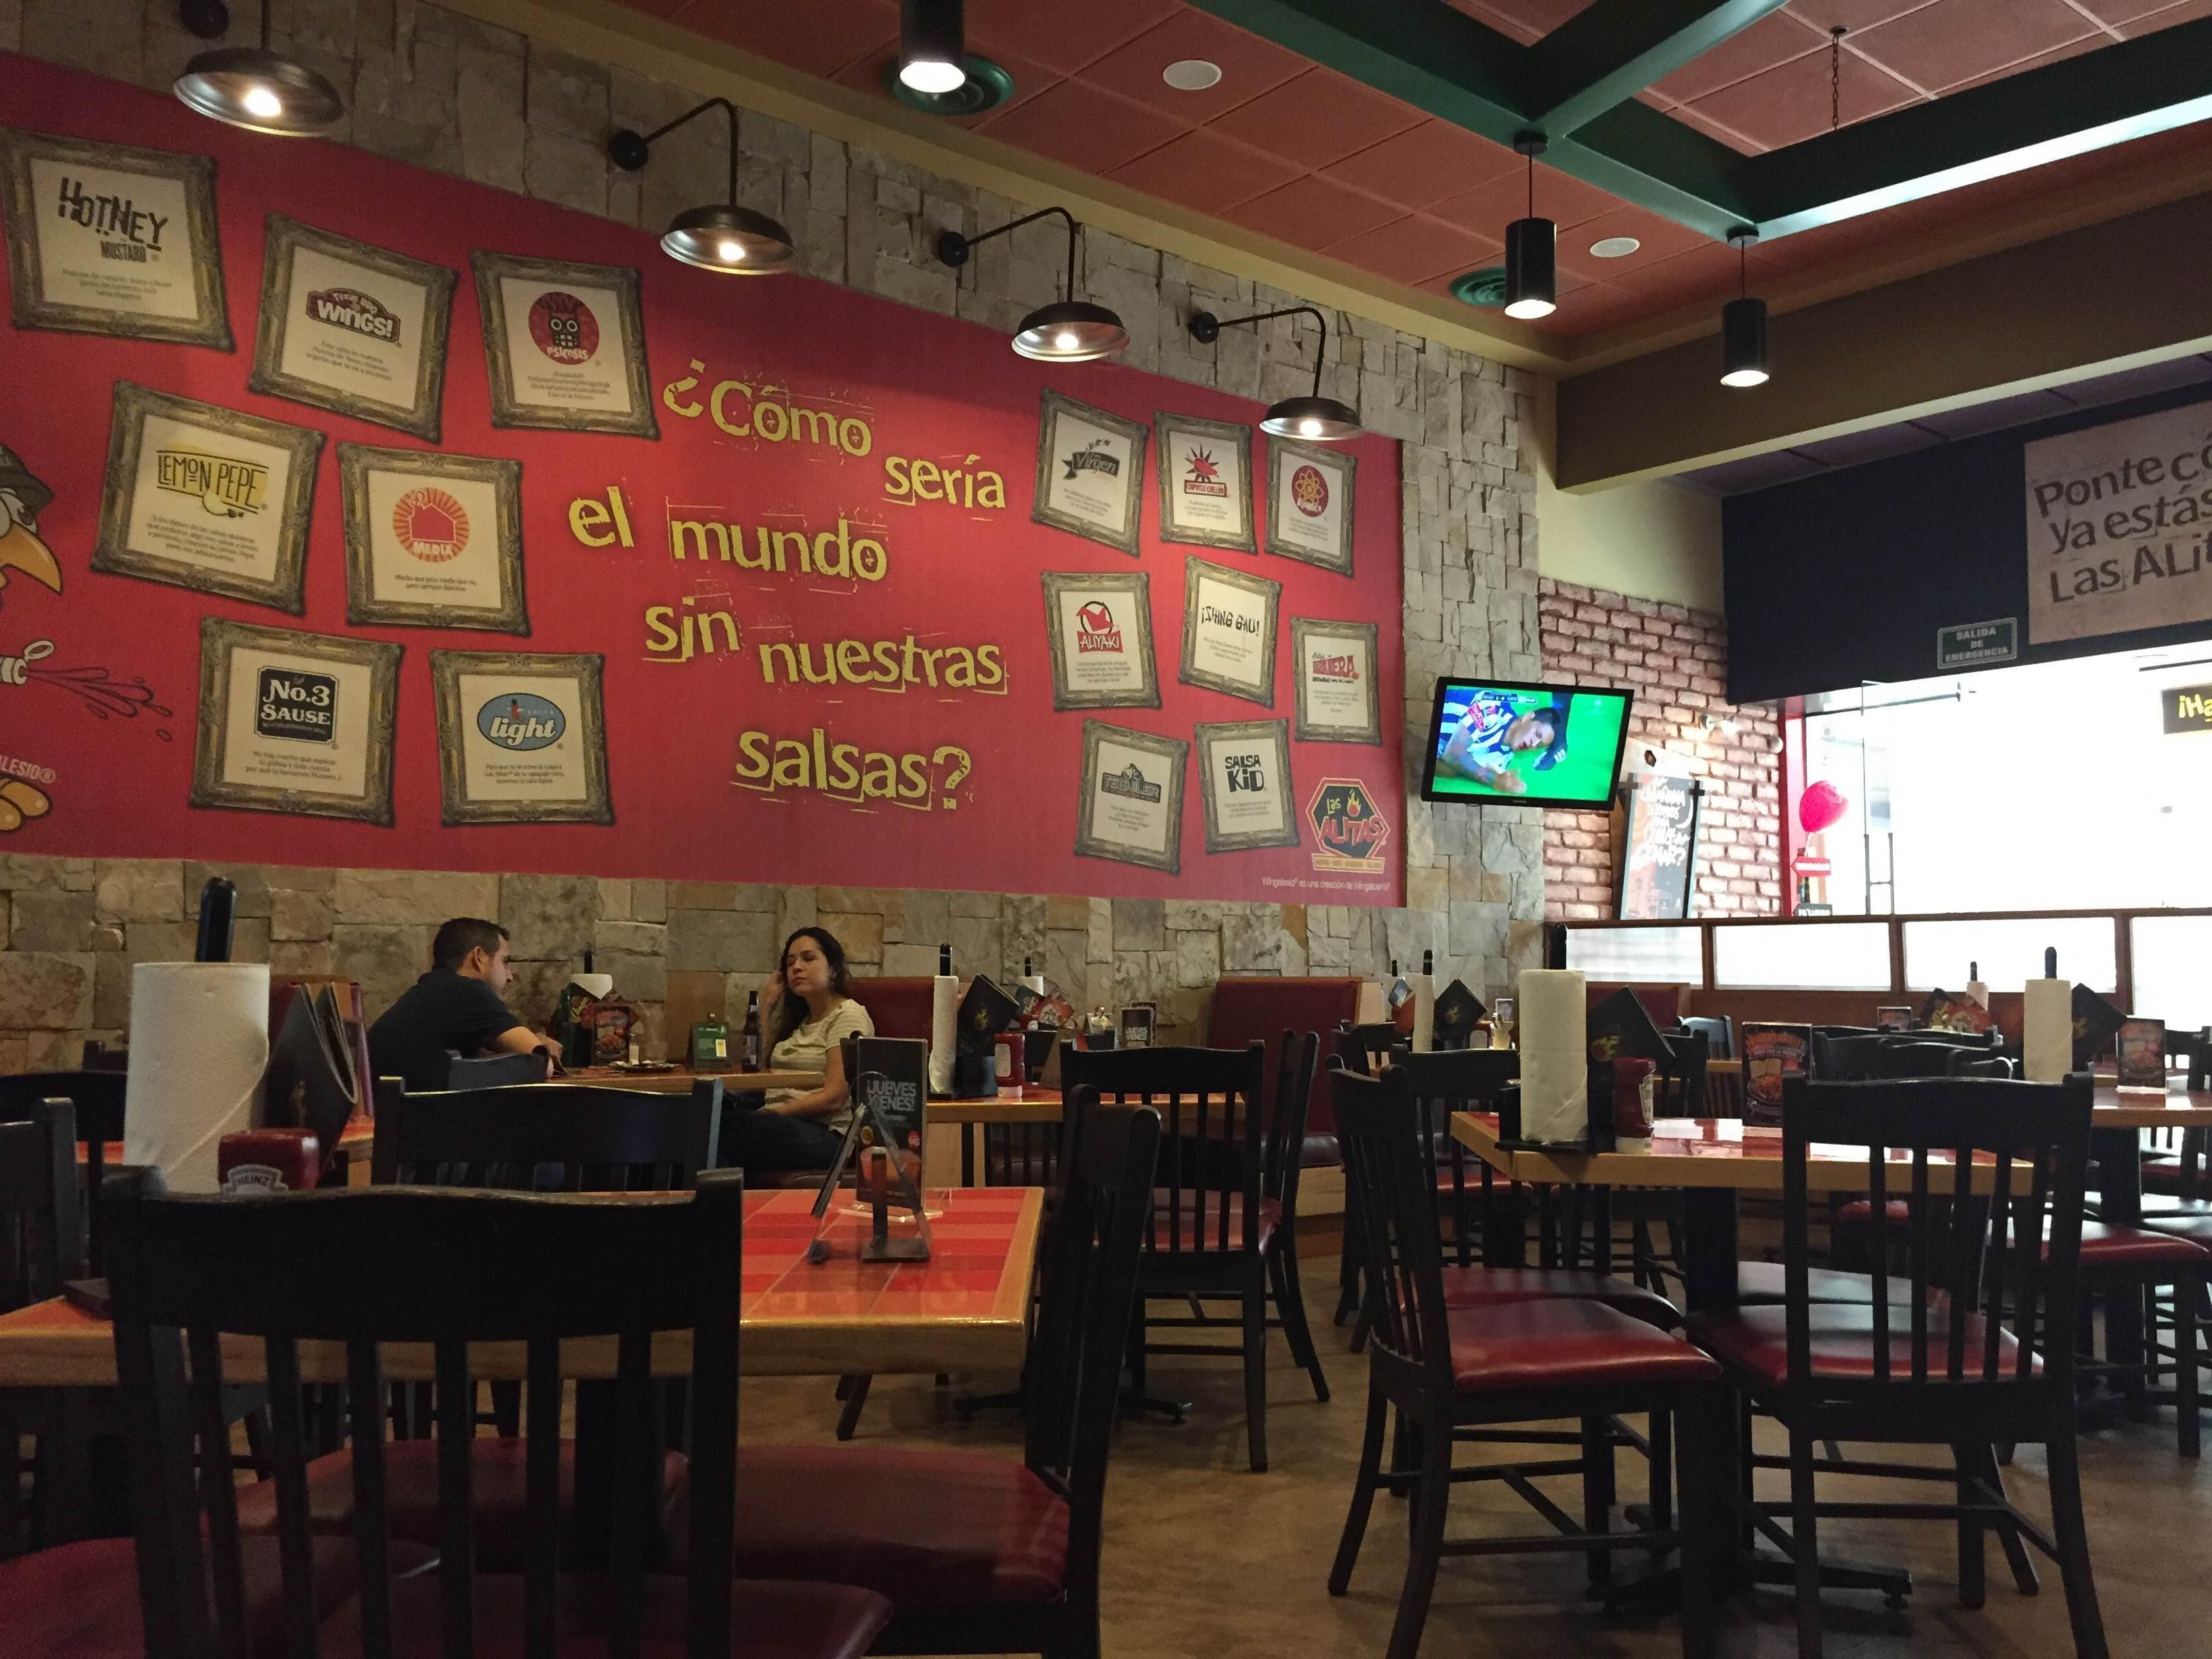 Las alitas, Galerías Mty, NL en Monterrey: 2 opiniones y 7 fotos